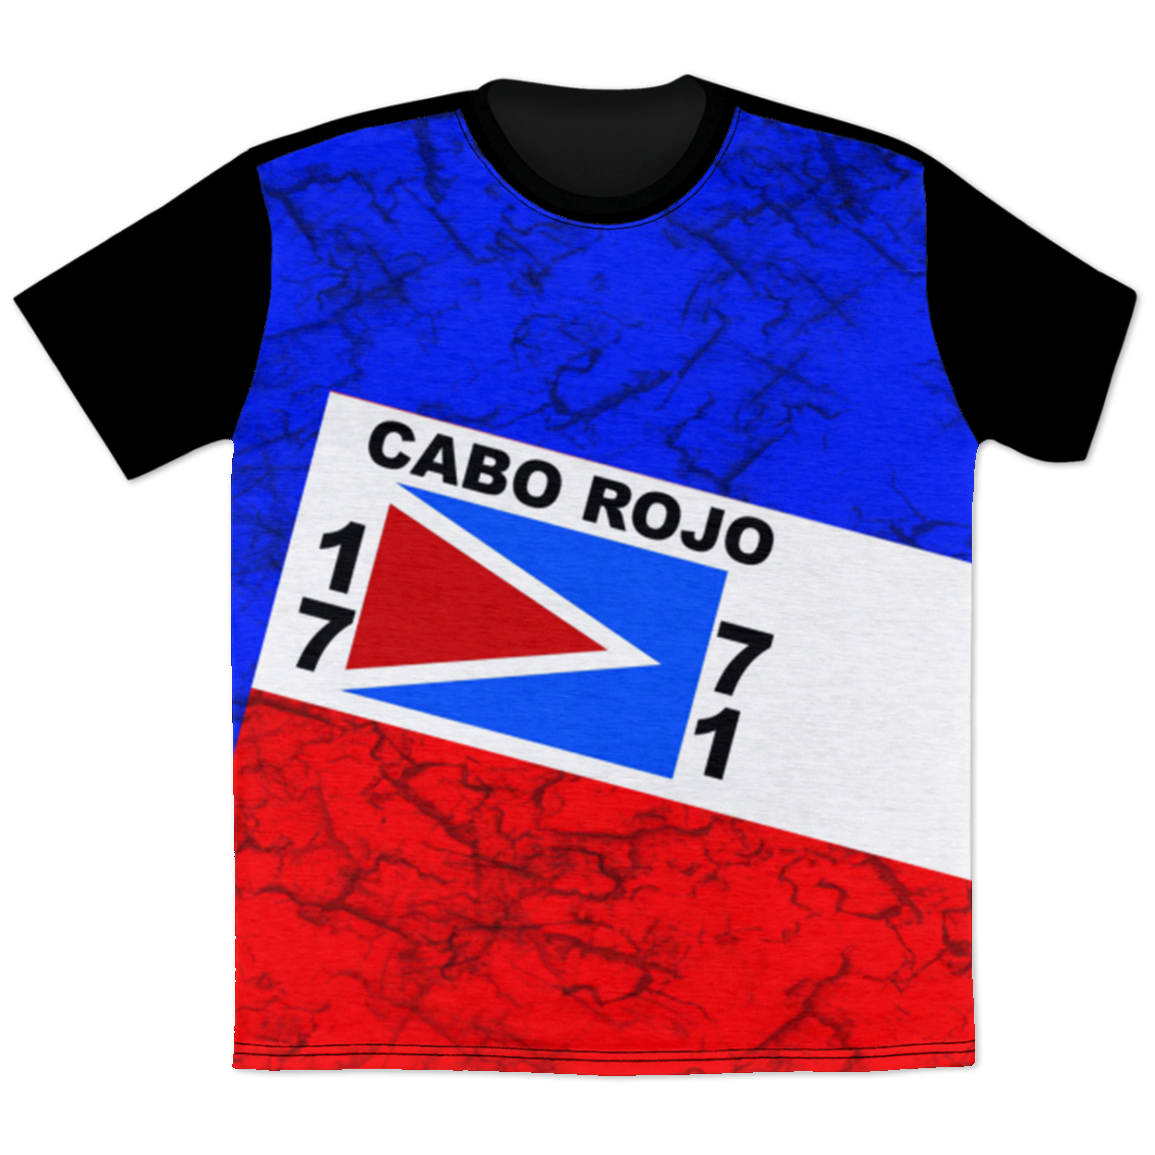 Cabo Rojo T-Shirt - Puerto Rican Pride